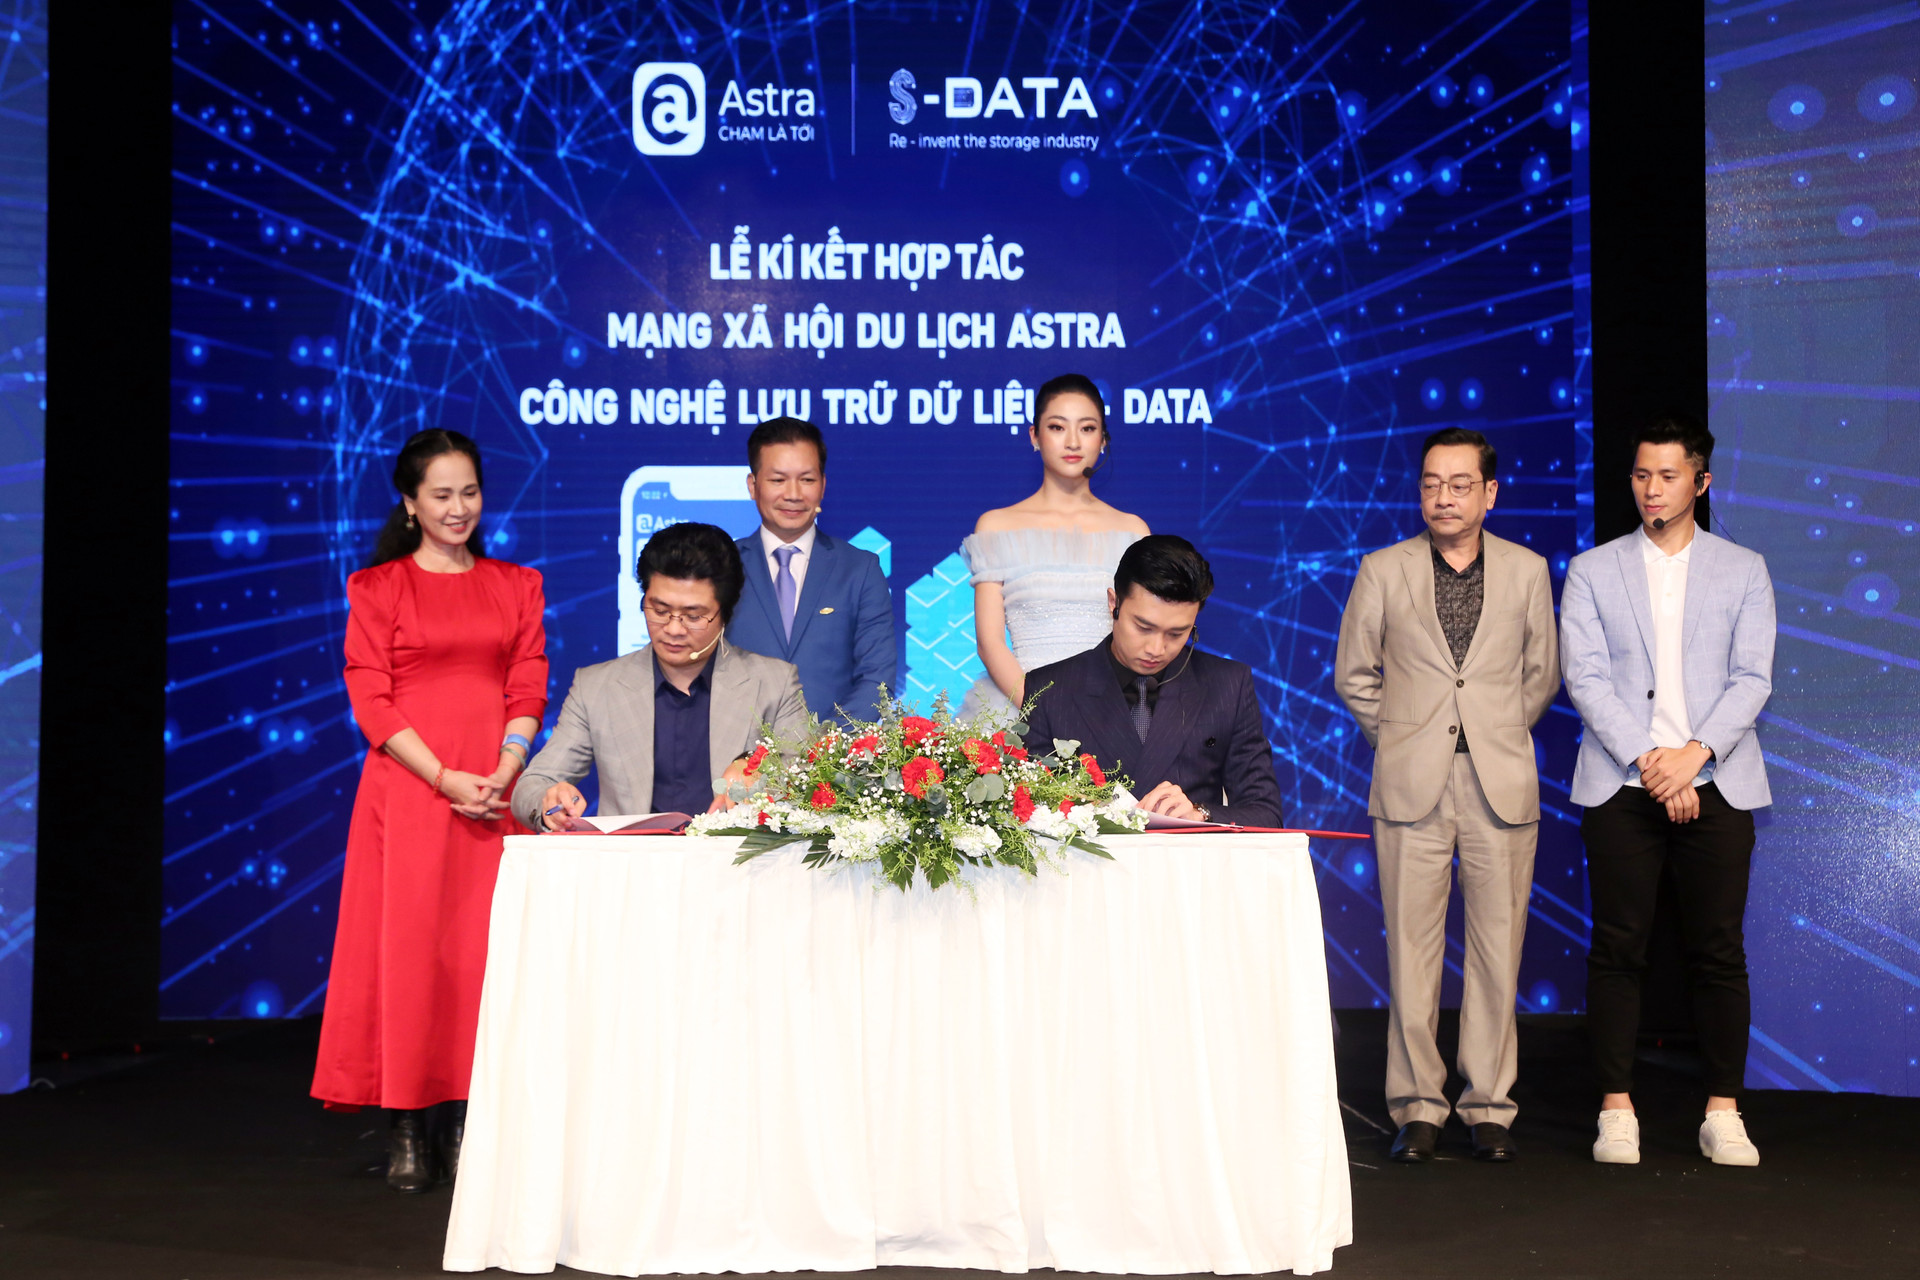 Ra mắt mạng xã hội du lịch Astra - Công nghệ lưu trữ dữ liệu S - Data